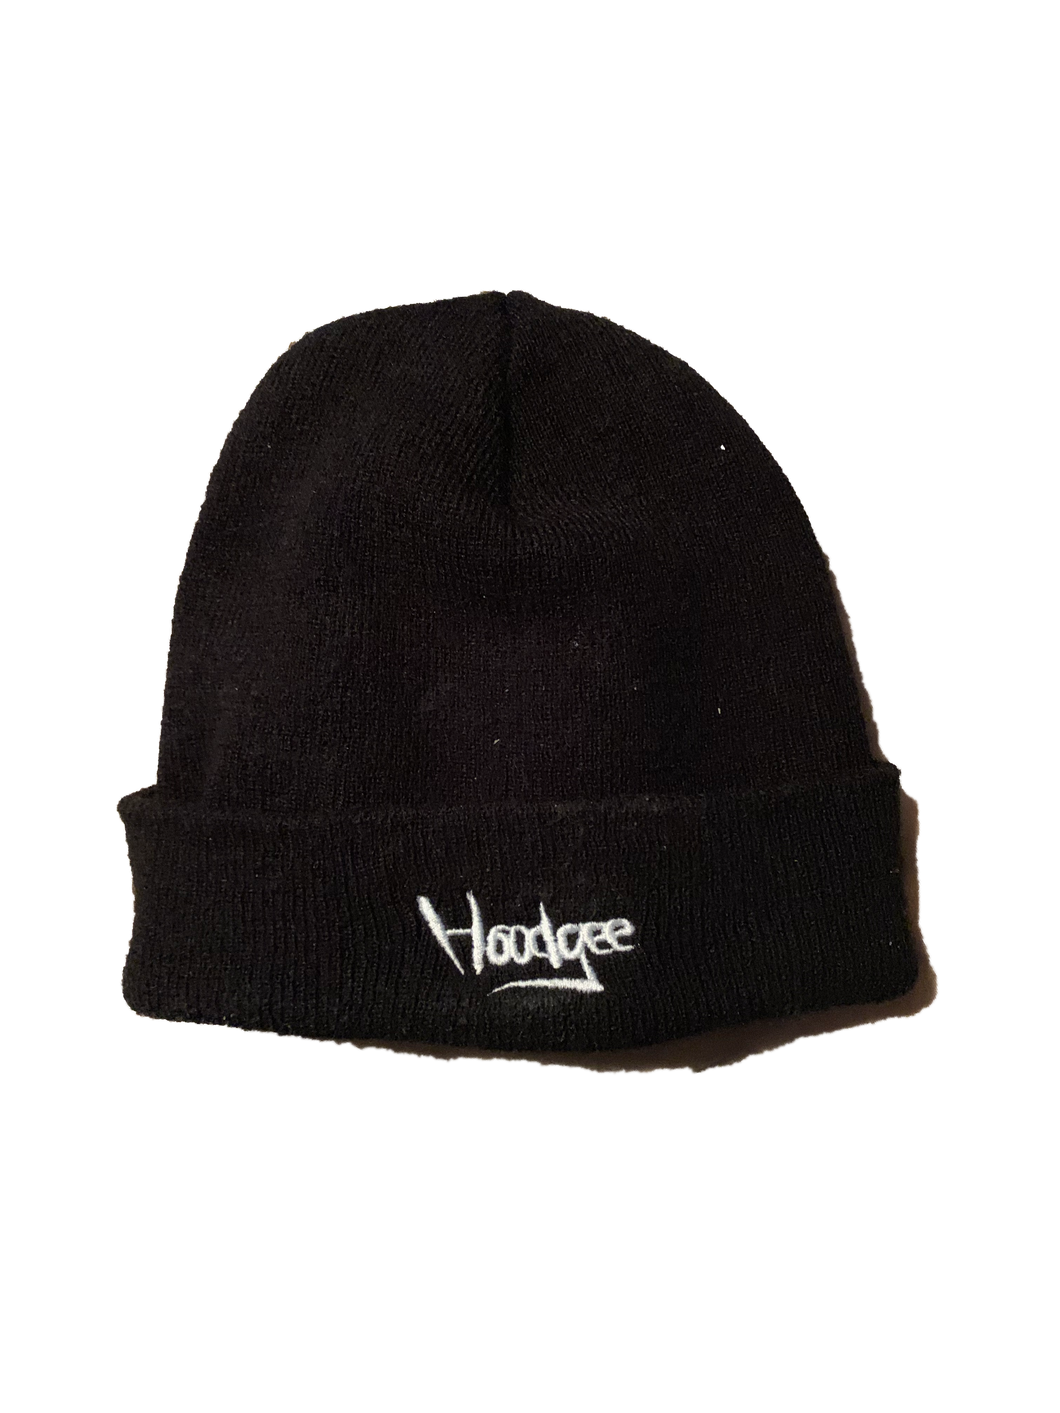 Hoodgee winter hat